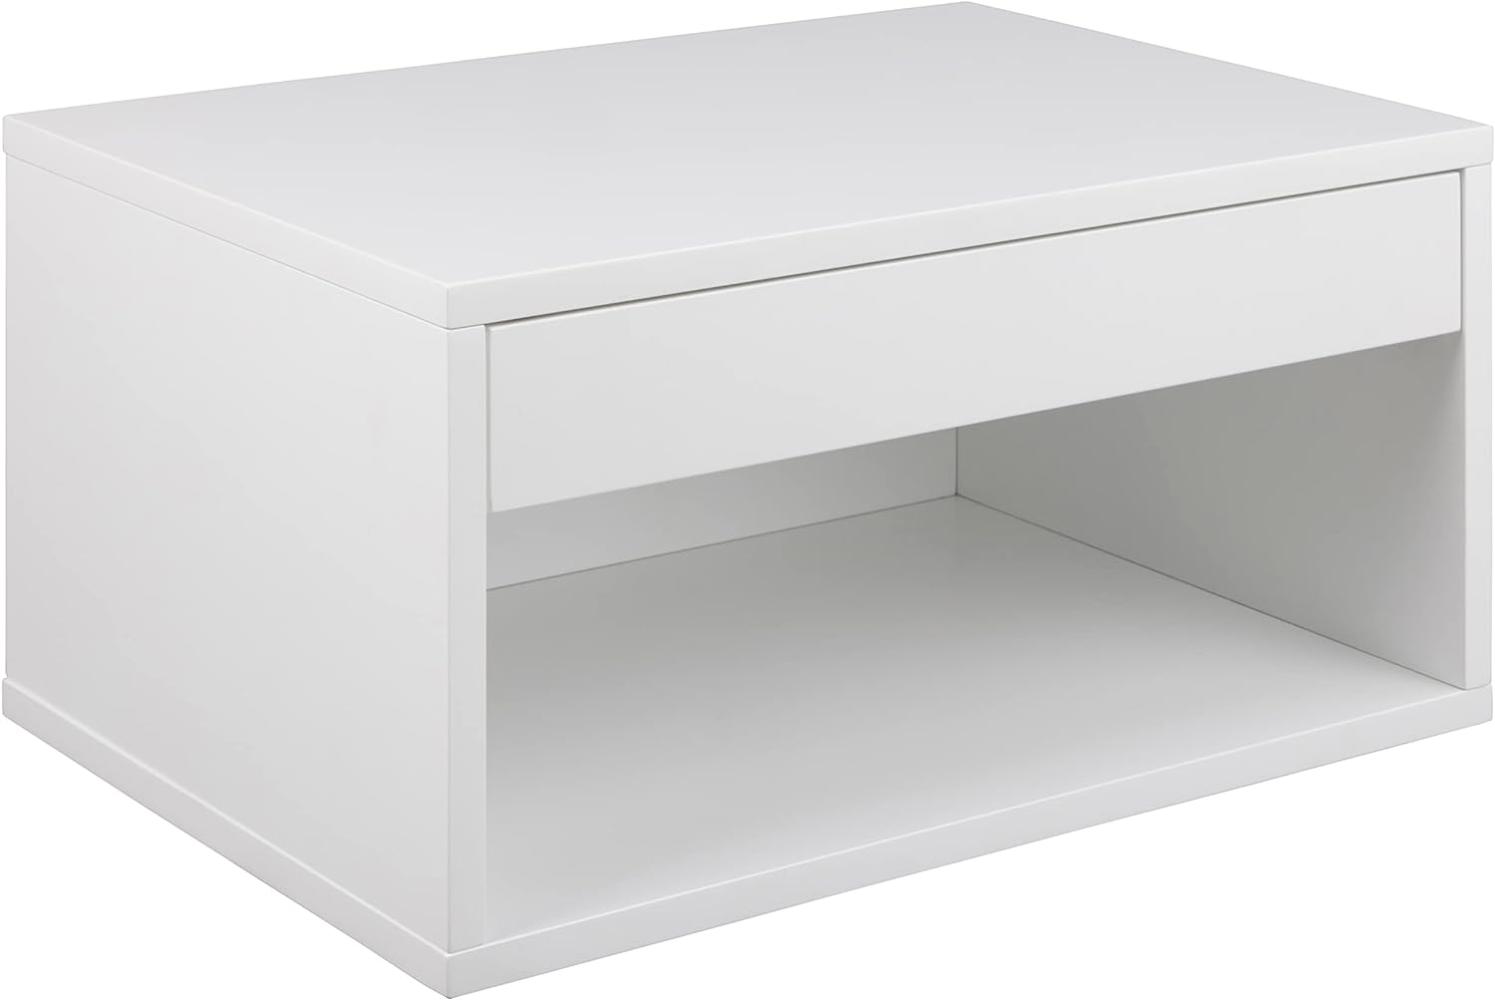 AC Design Furniture Kelda quadratischer weißer Nachttisch mit 1 Schublade und offenem Fach, Wandmontierter Nachttisch mit Stauraum, geräumiger Nachttisch, Ordnung im Schlafzimmer Bild 1